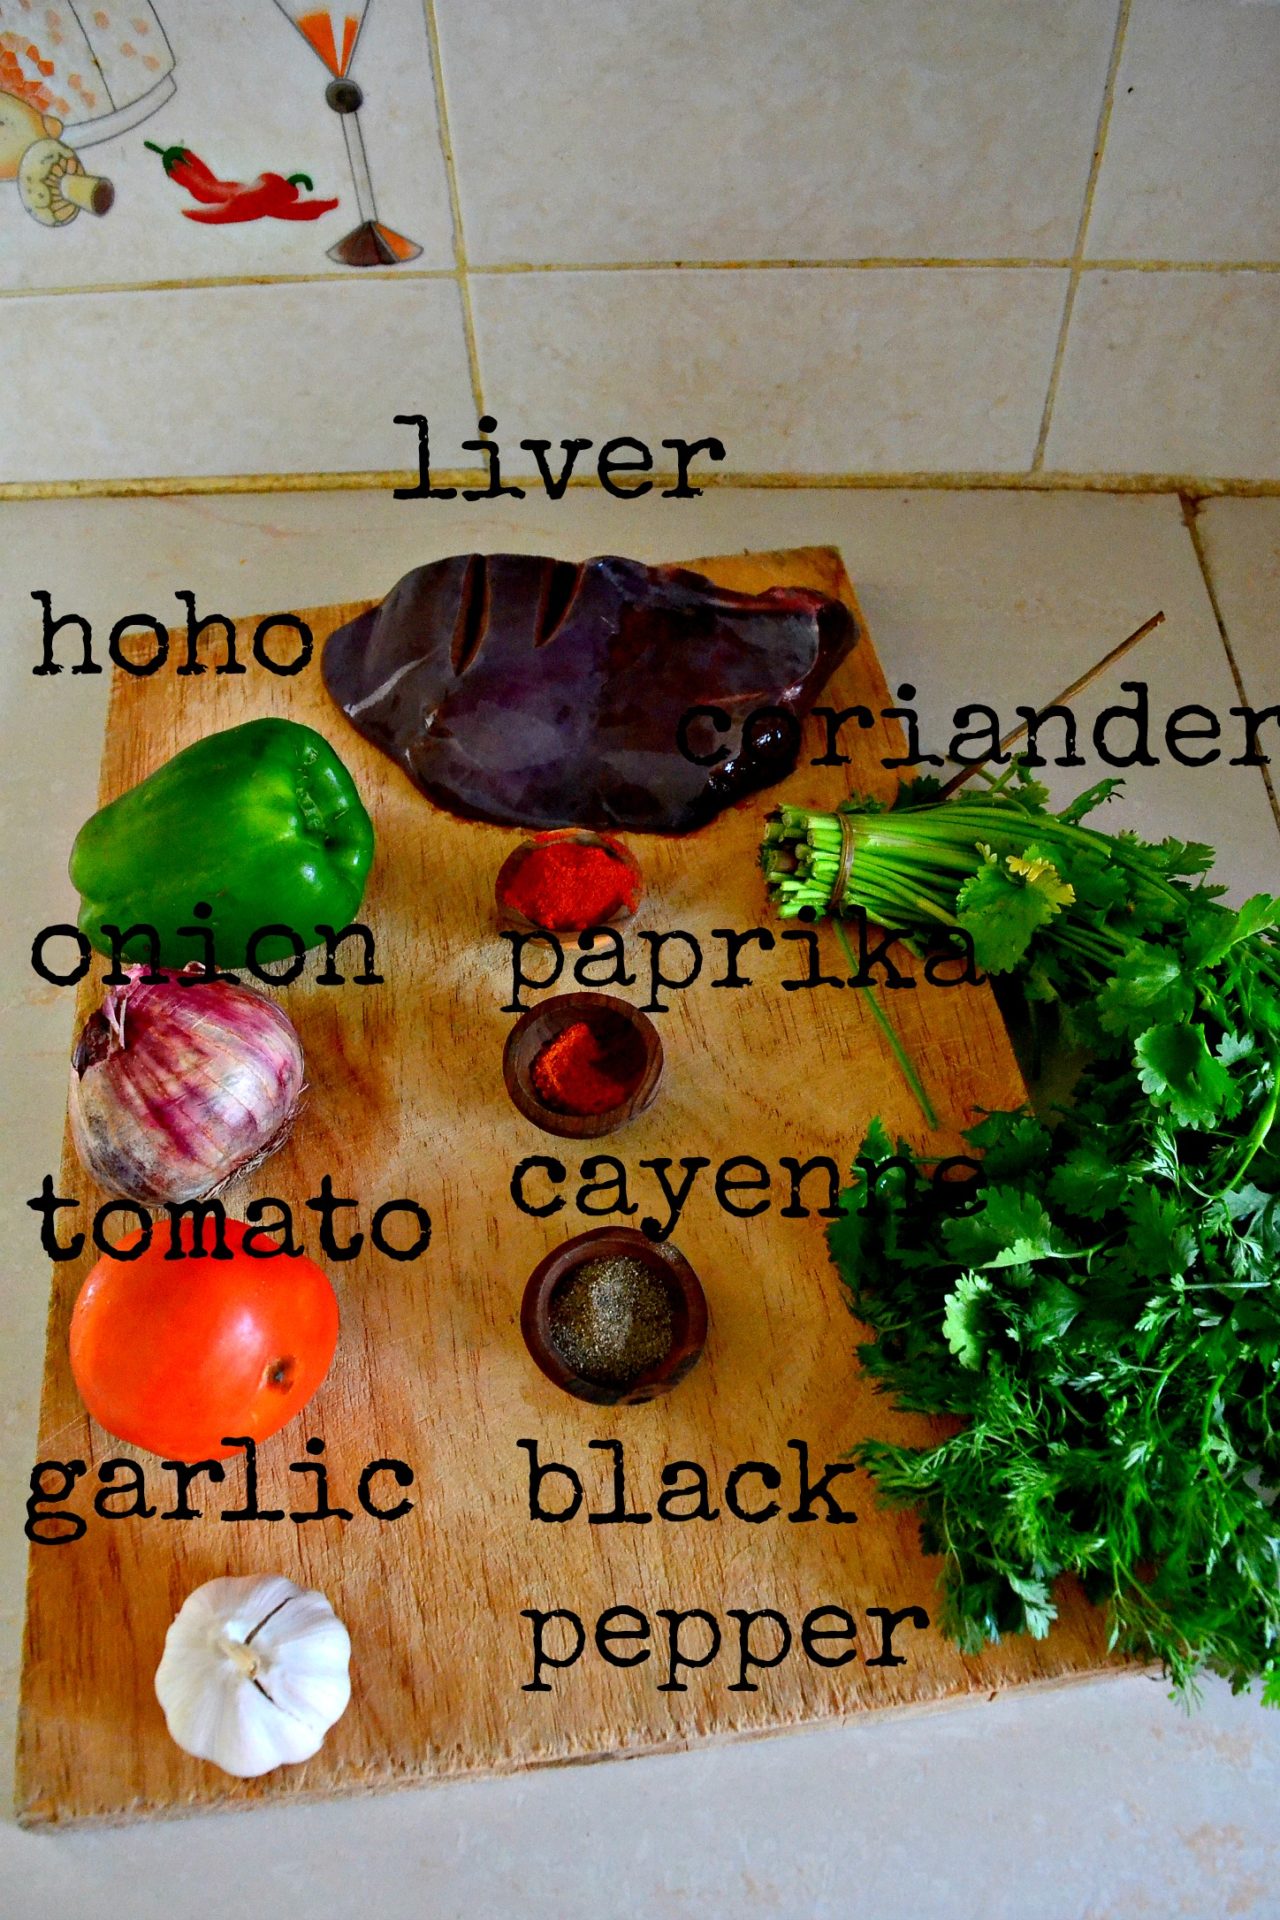 ingredients for garlic paprika liver_kaluhiskitchen.com_liver ingredients_how to make liver_kaluhiskitchen.com